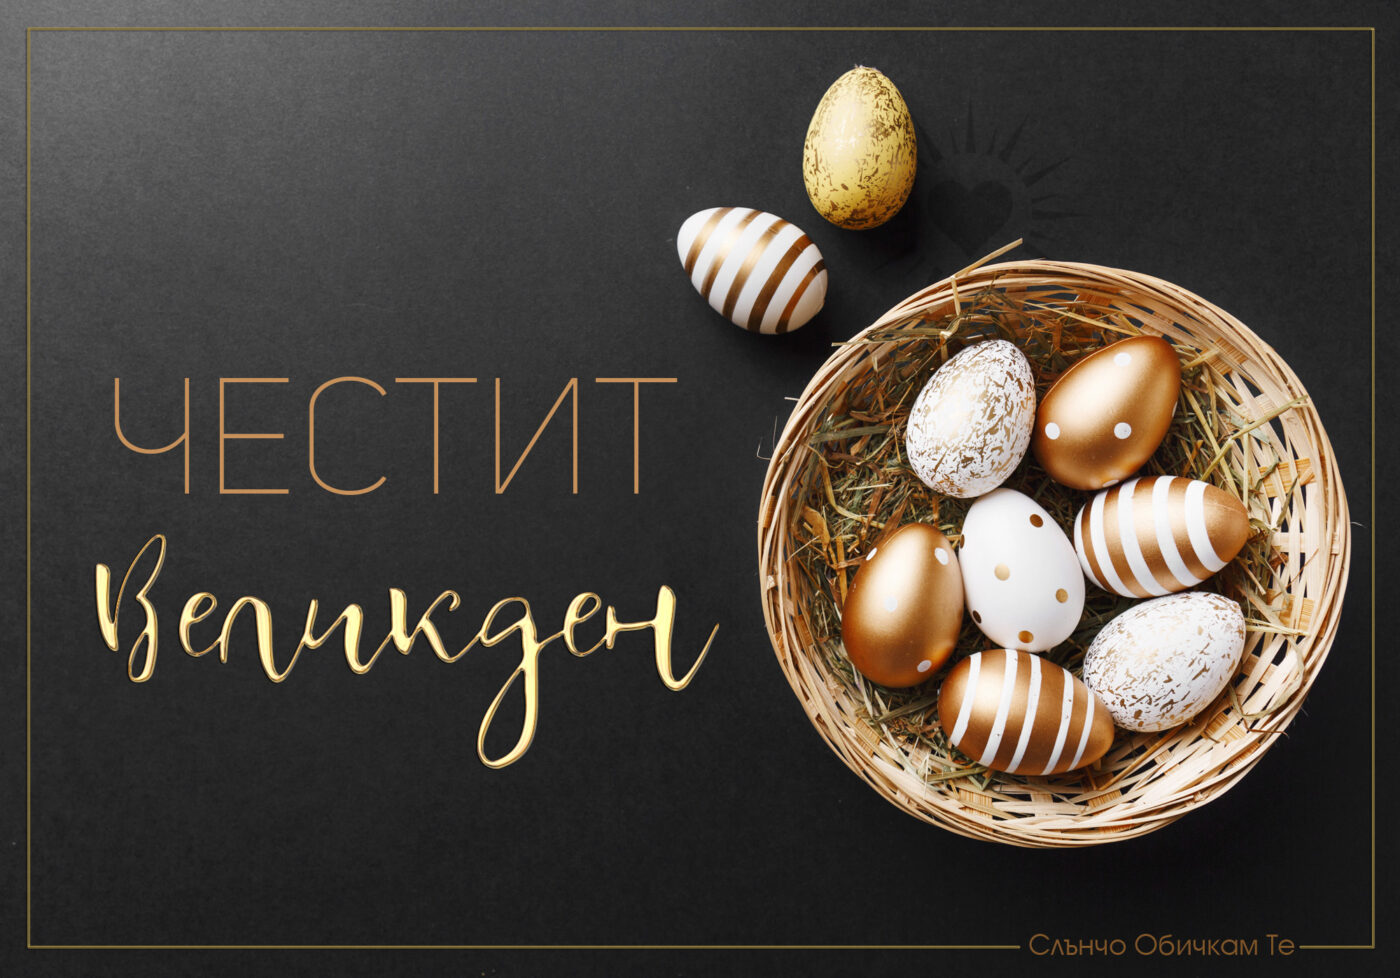 Честит Великден, Великден 2021, Златни великденски яйца на черен фон, картички за Великден. Христос Воскресе!